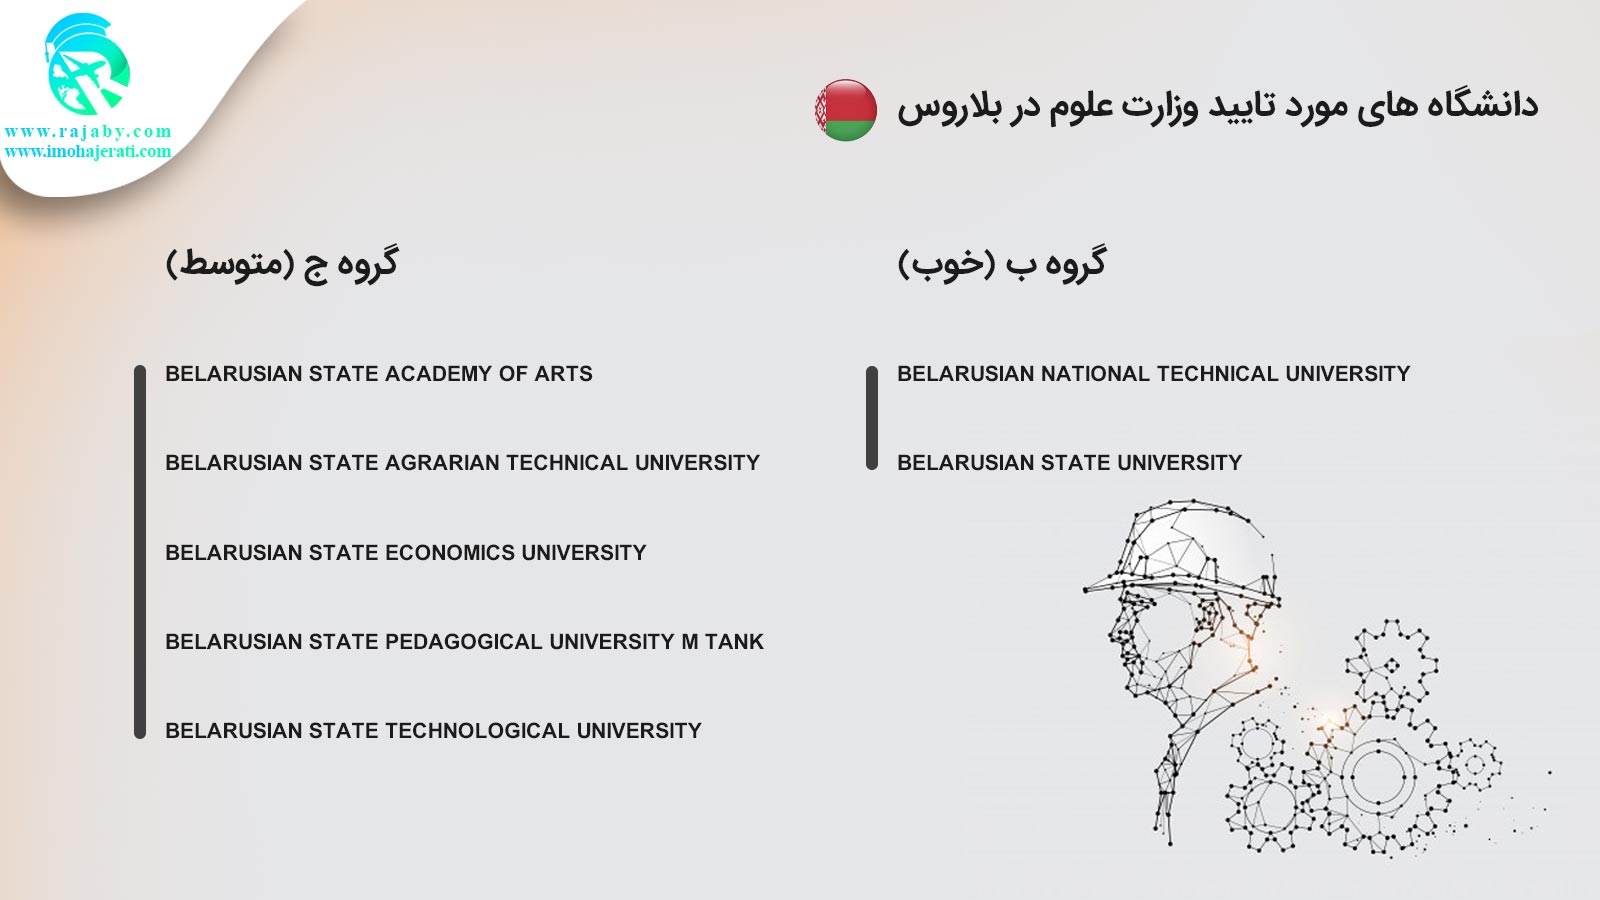 دانشگاه های مورد تایید وزارت علوم در بلاروس